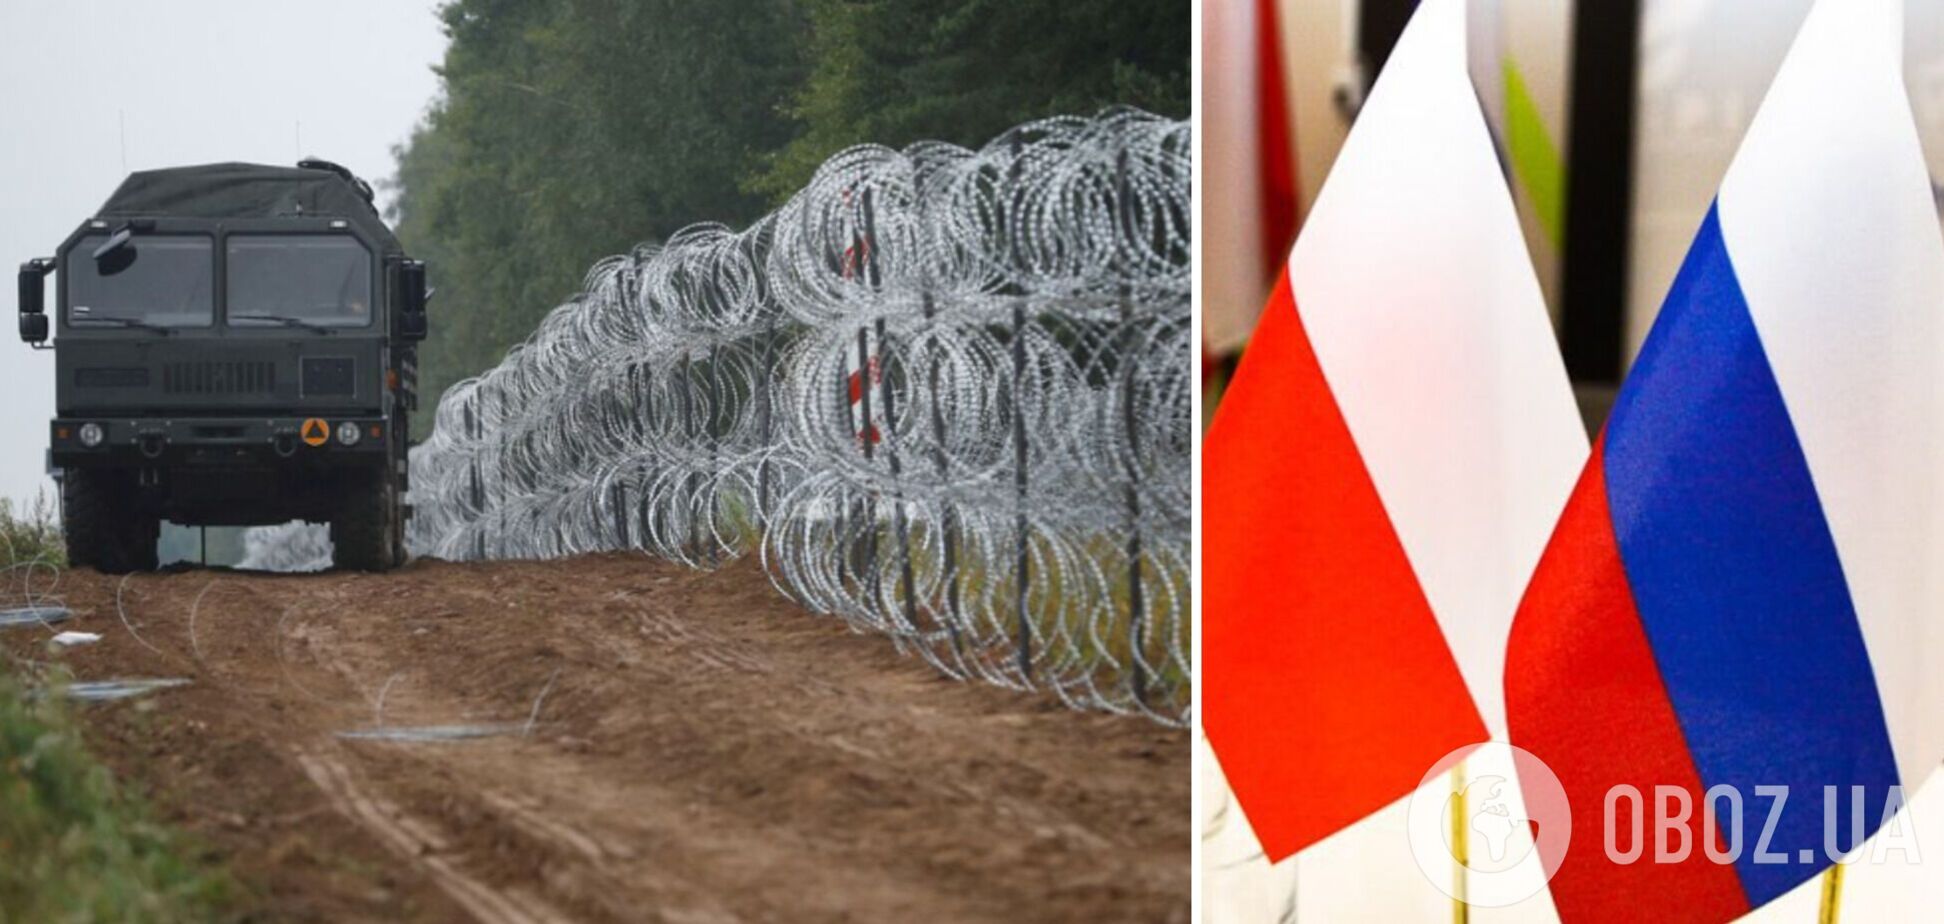 Польша может построить стену на границе с Калининградской областью РФ: стали известны подробности